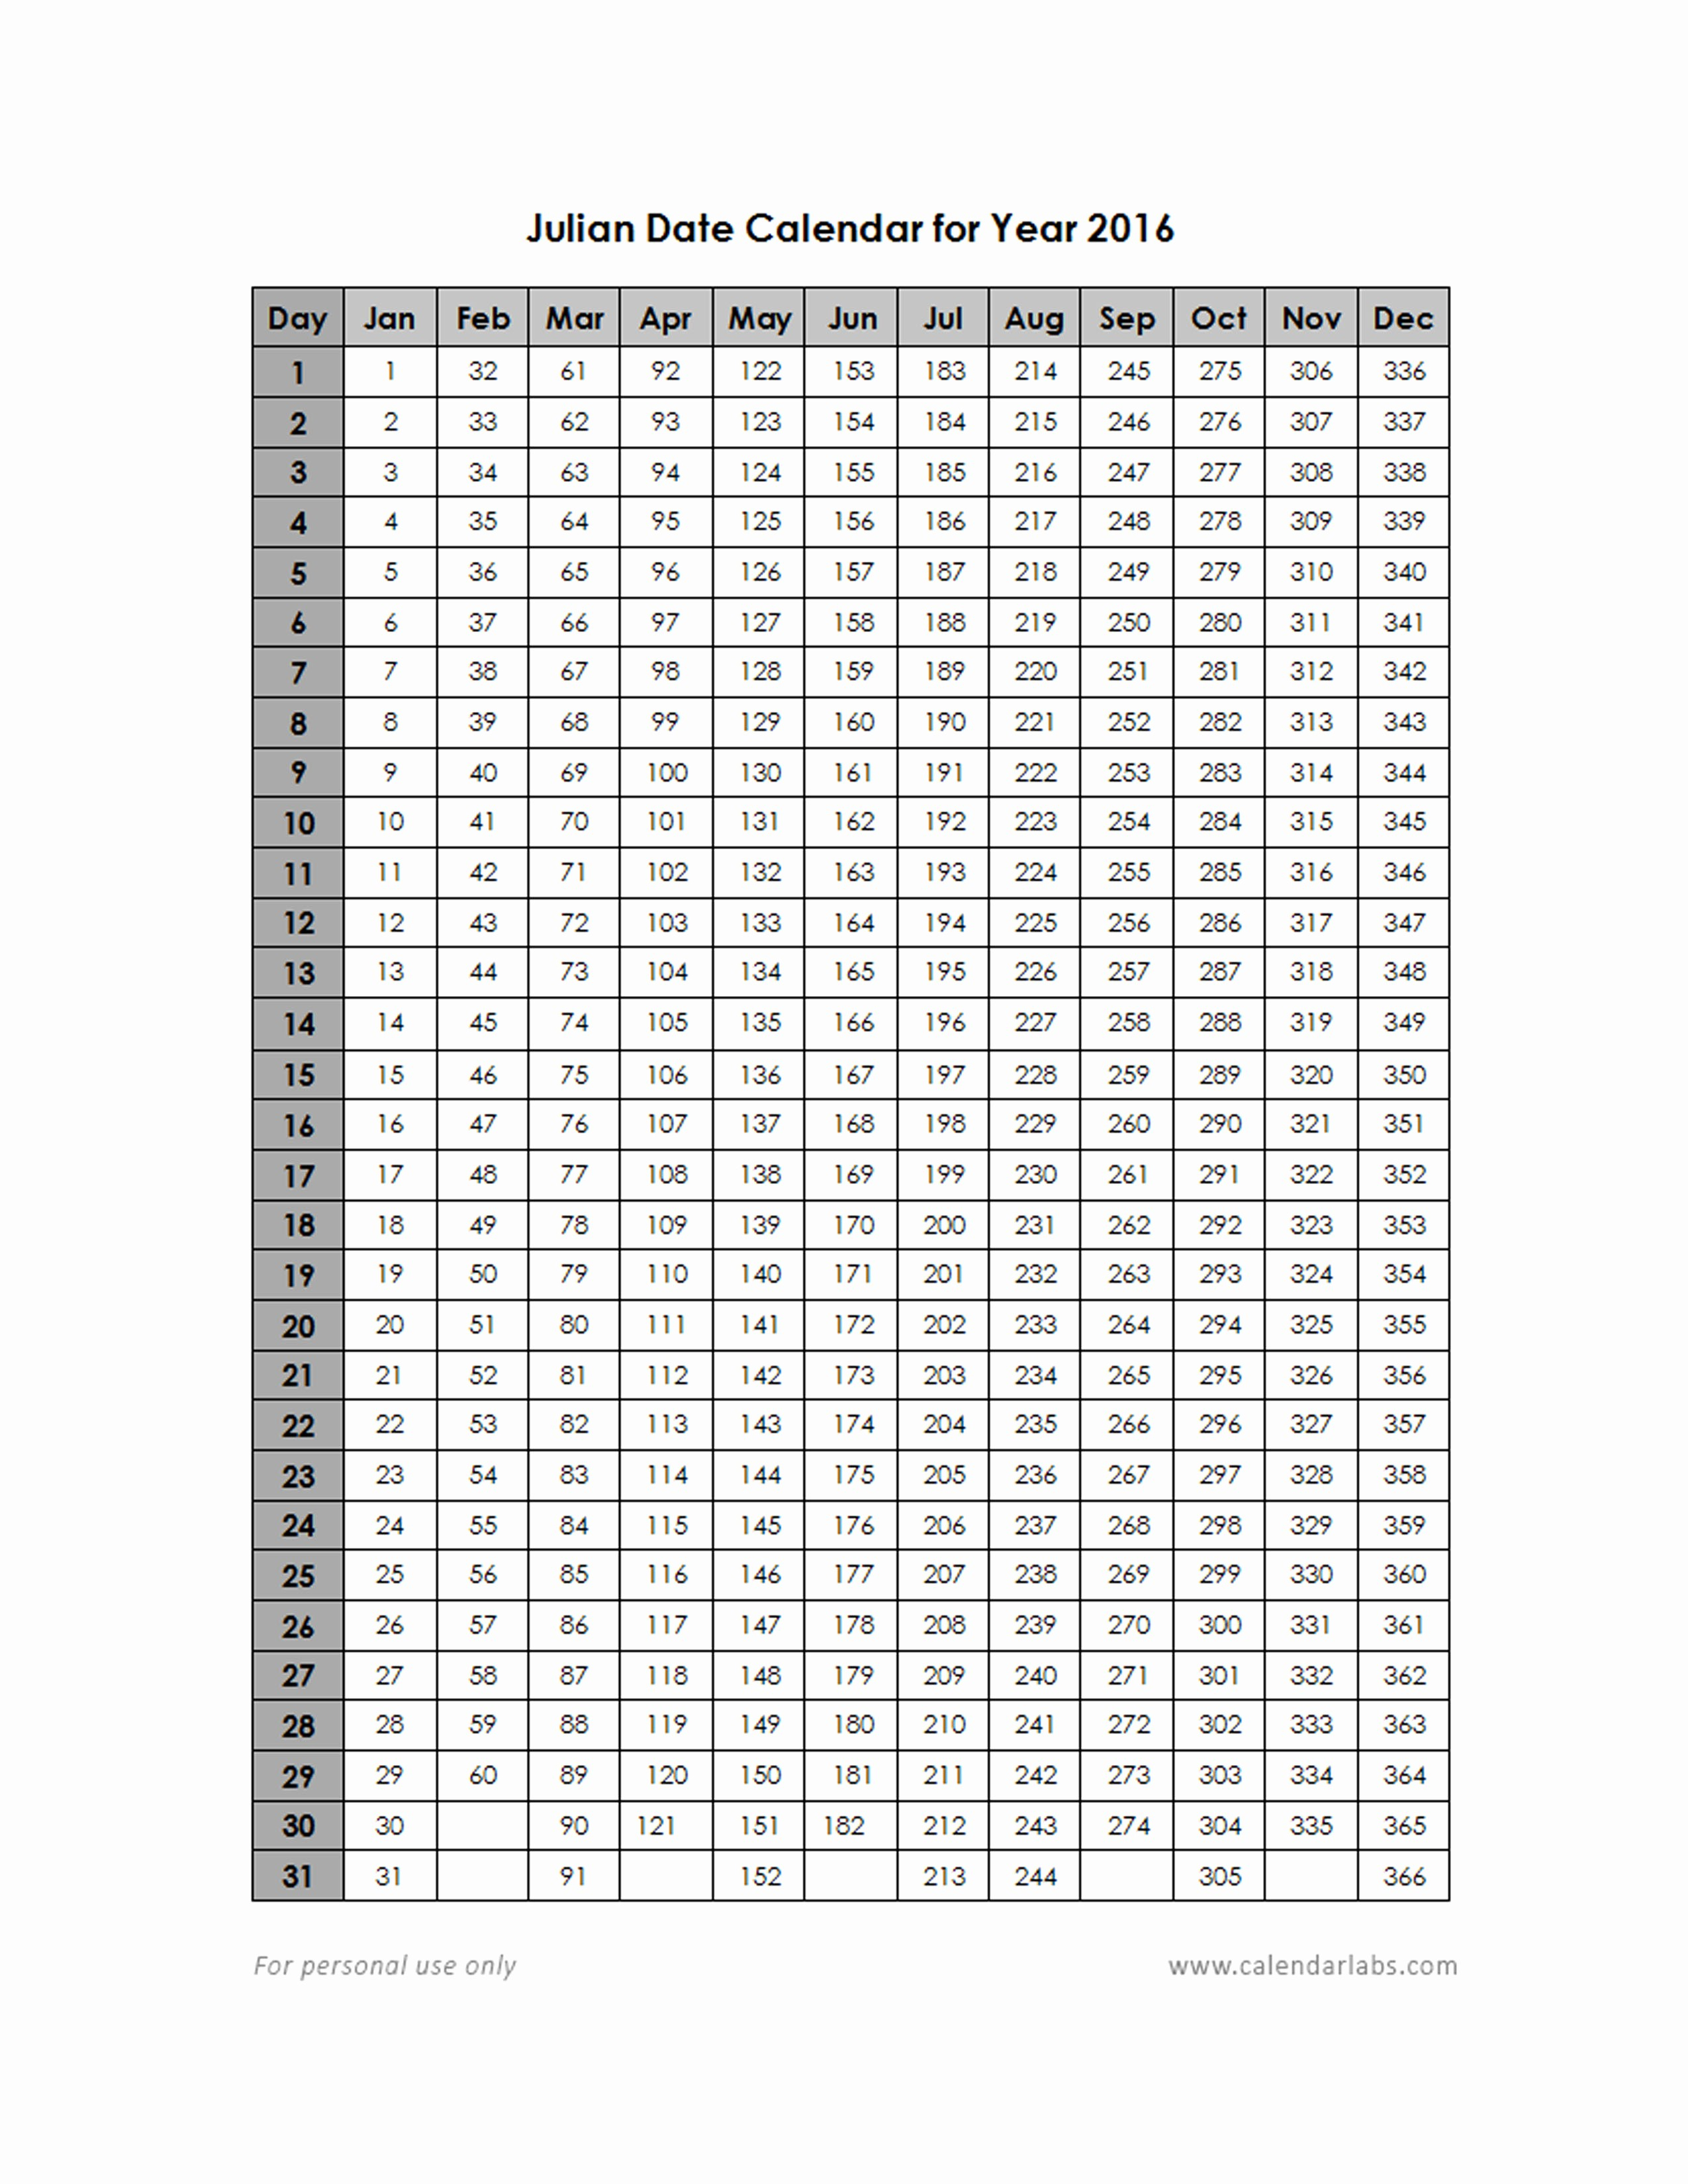 Julian Date Calendar 2020 Calendar For Planning